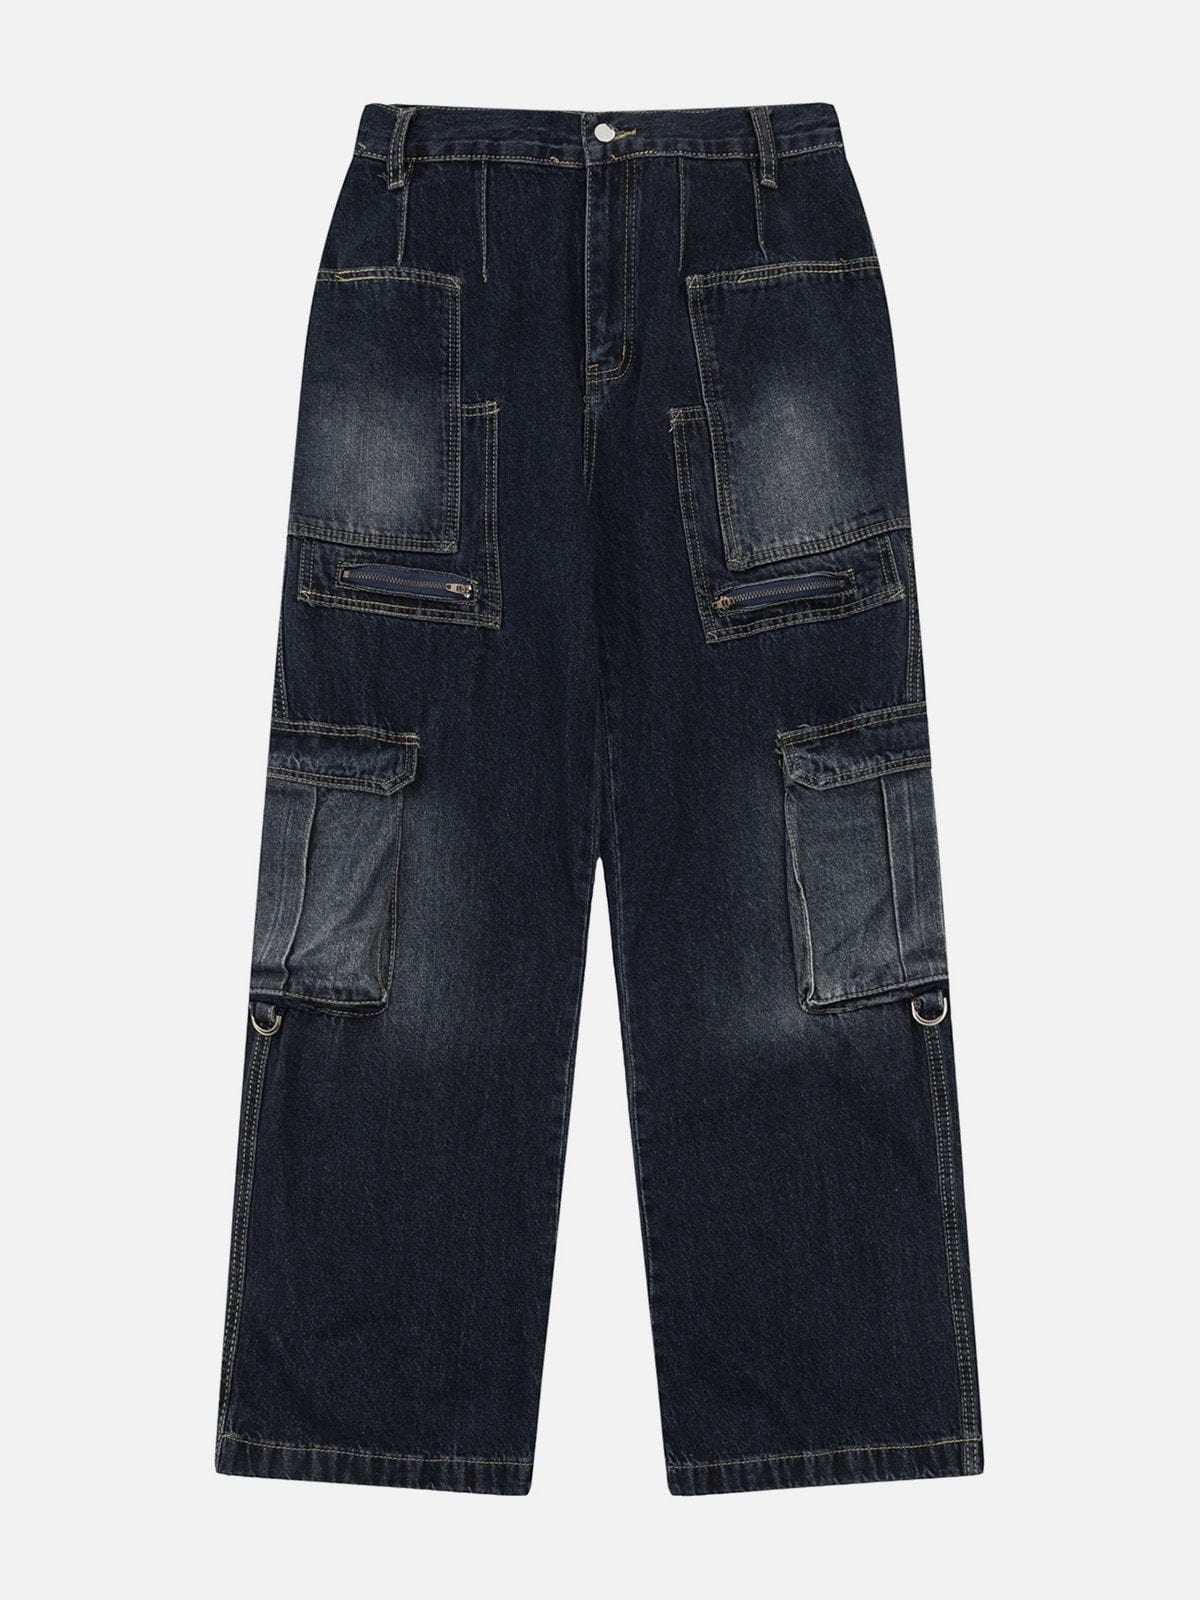 NEV Multi-pocket Patchwork Jeans